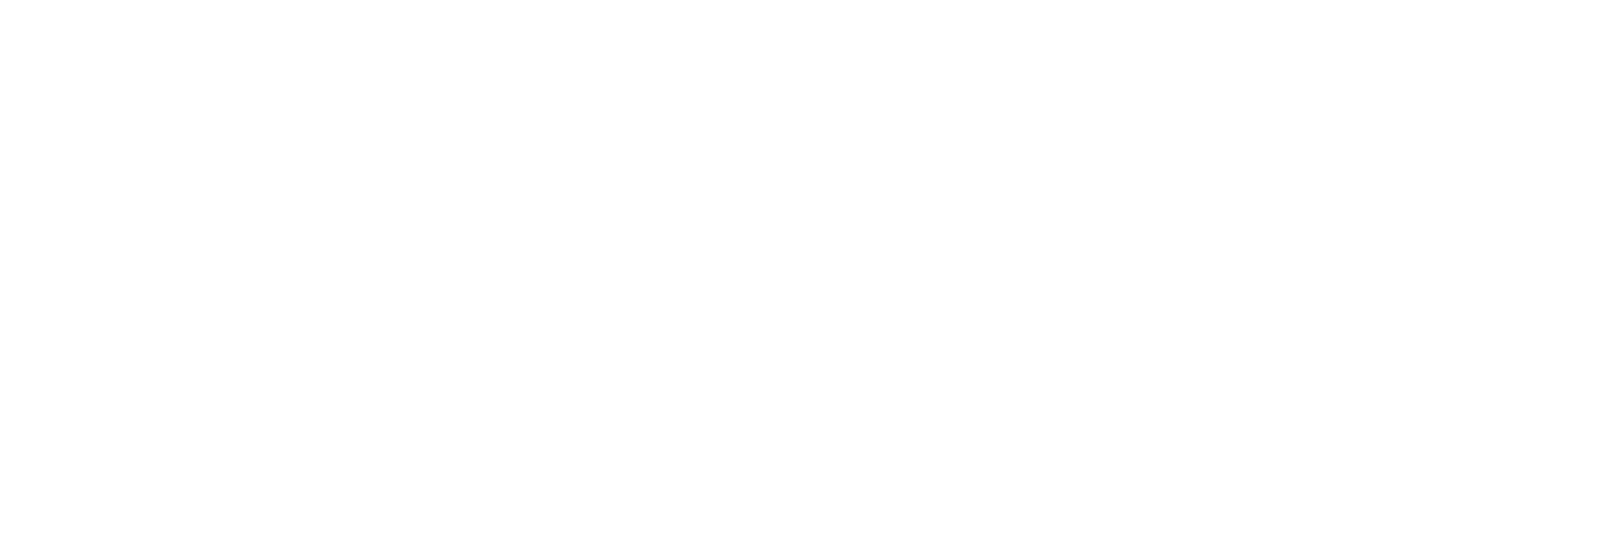 Semapa logo large for dark backgrounds (transparent PNG)